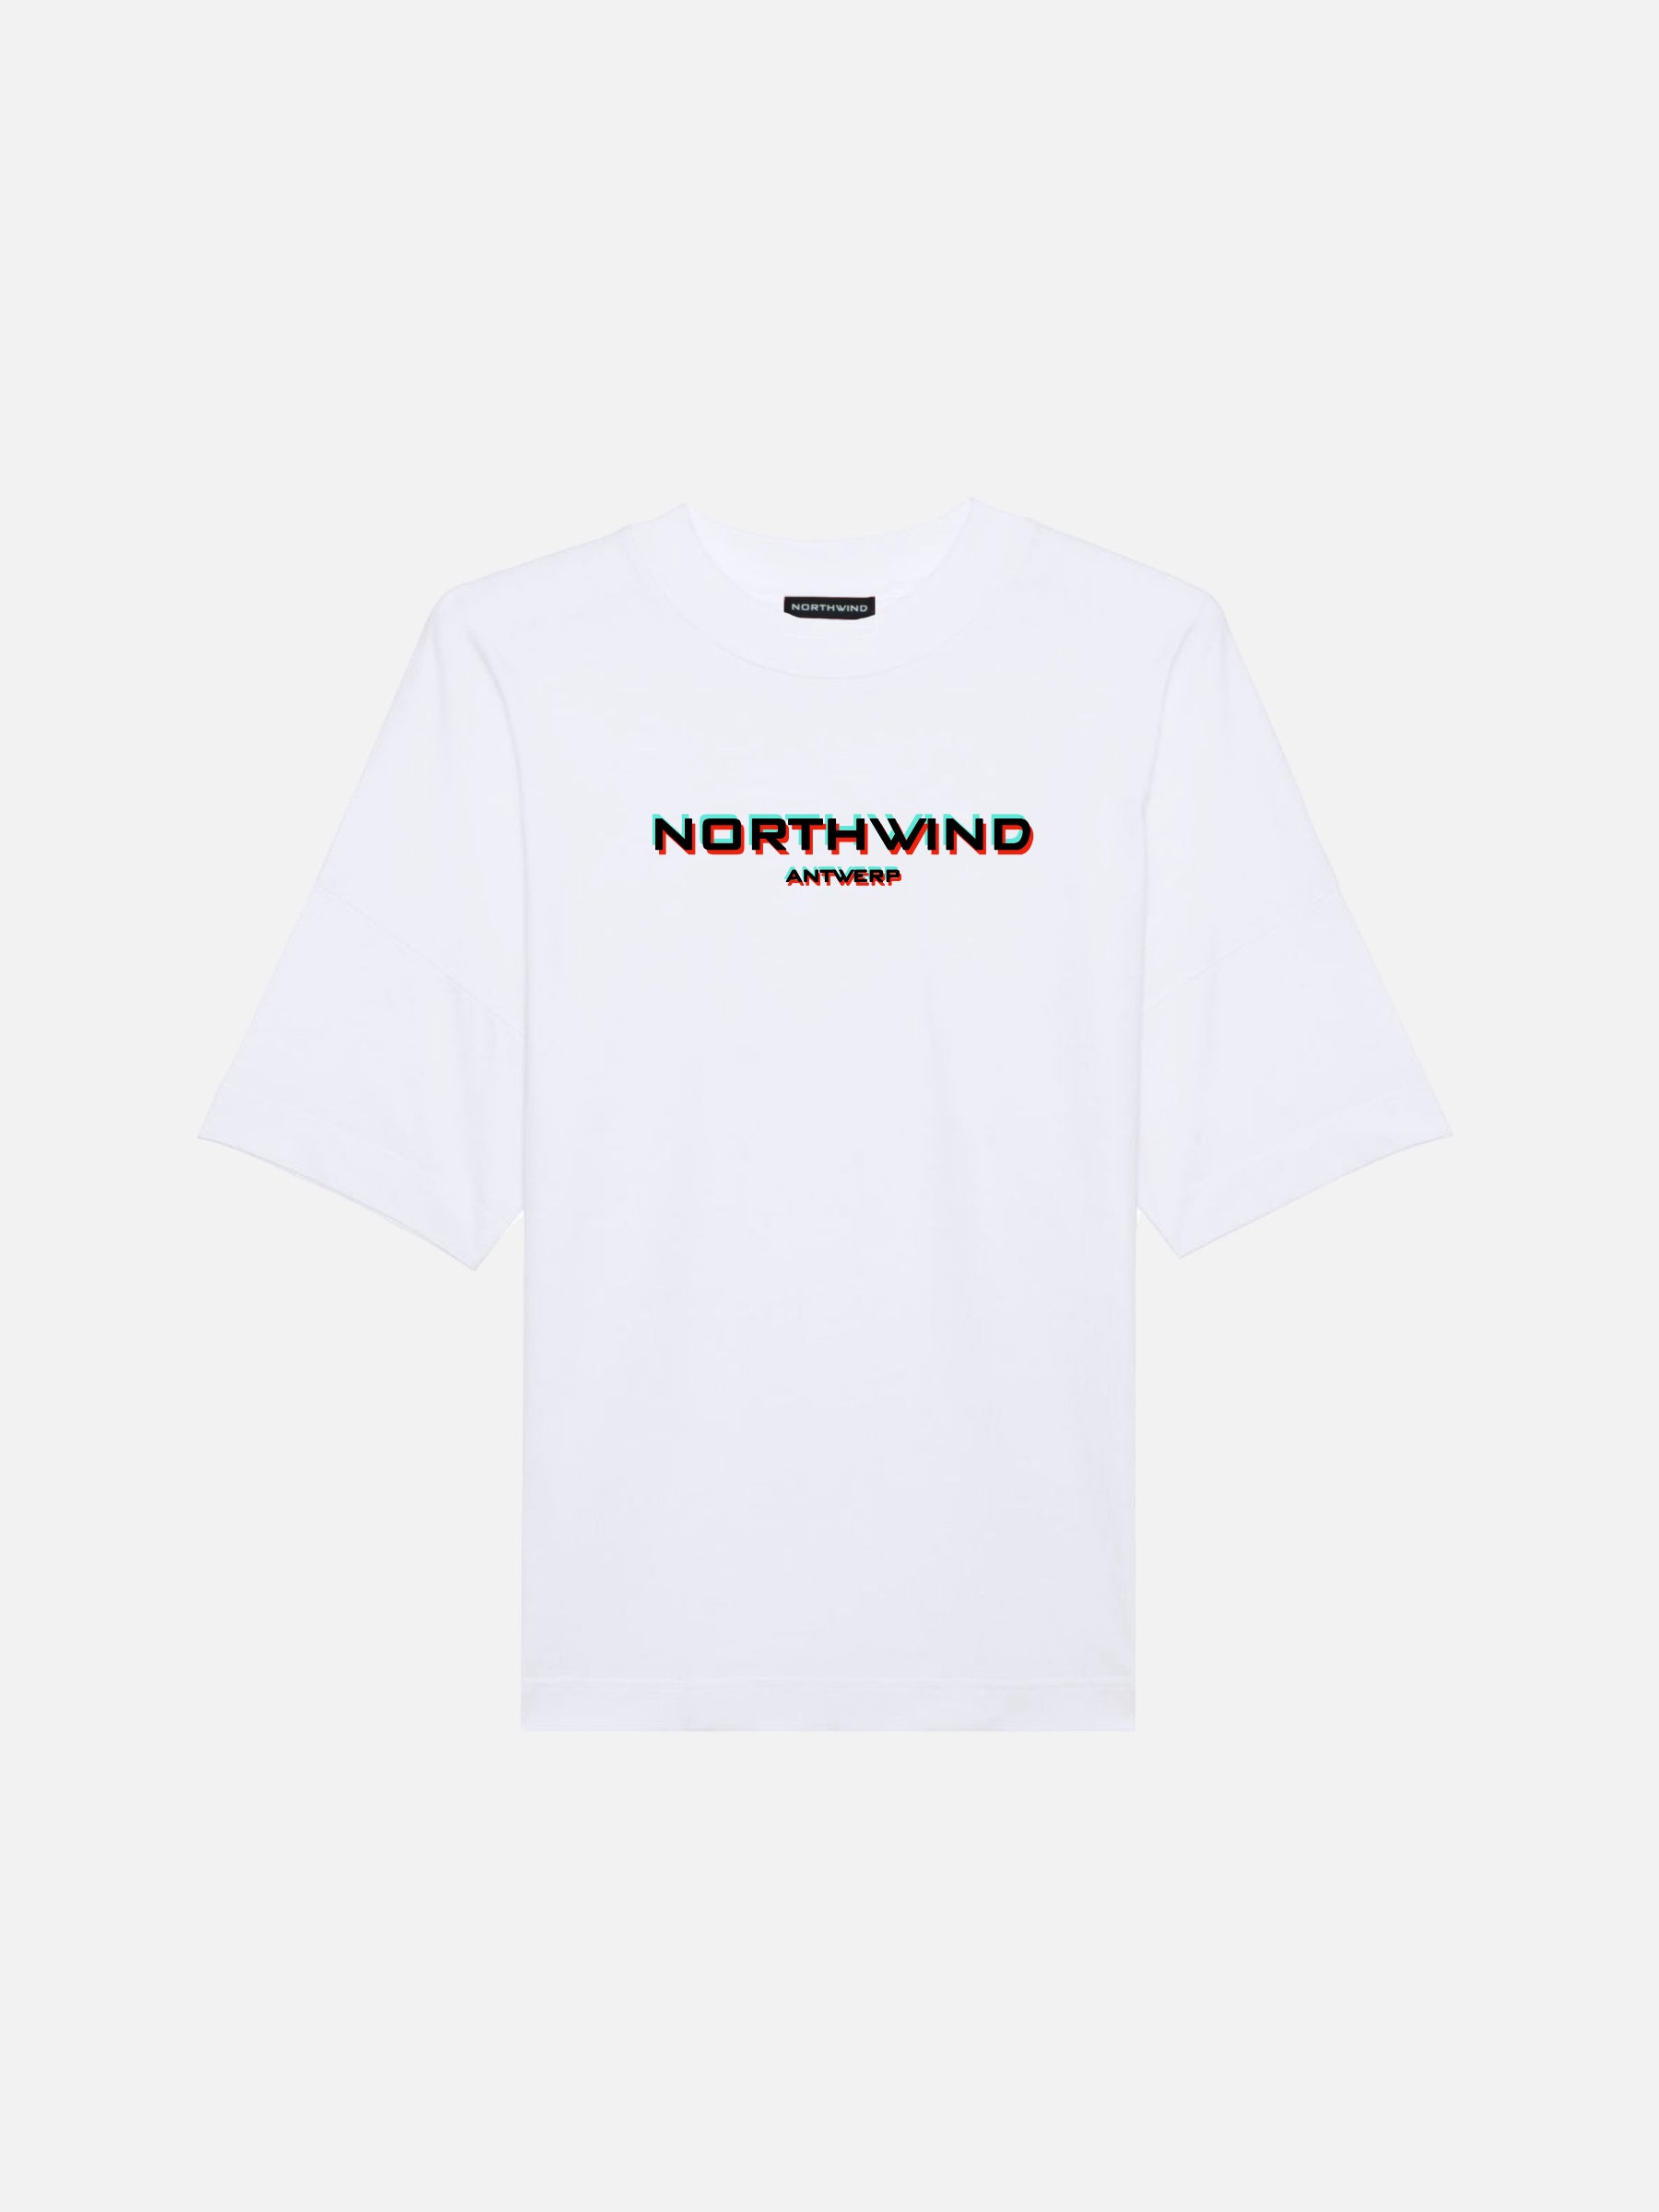 Northwind Antwerp Organic White T-Shirt